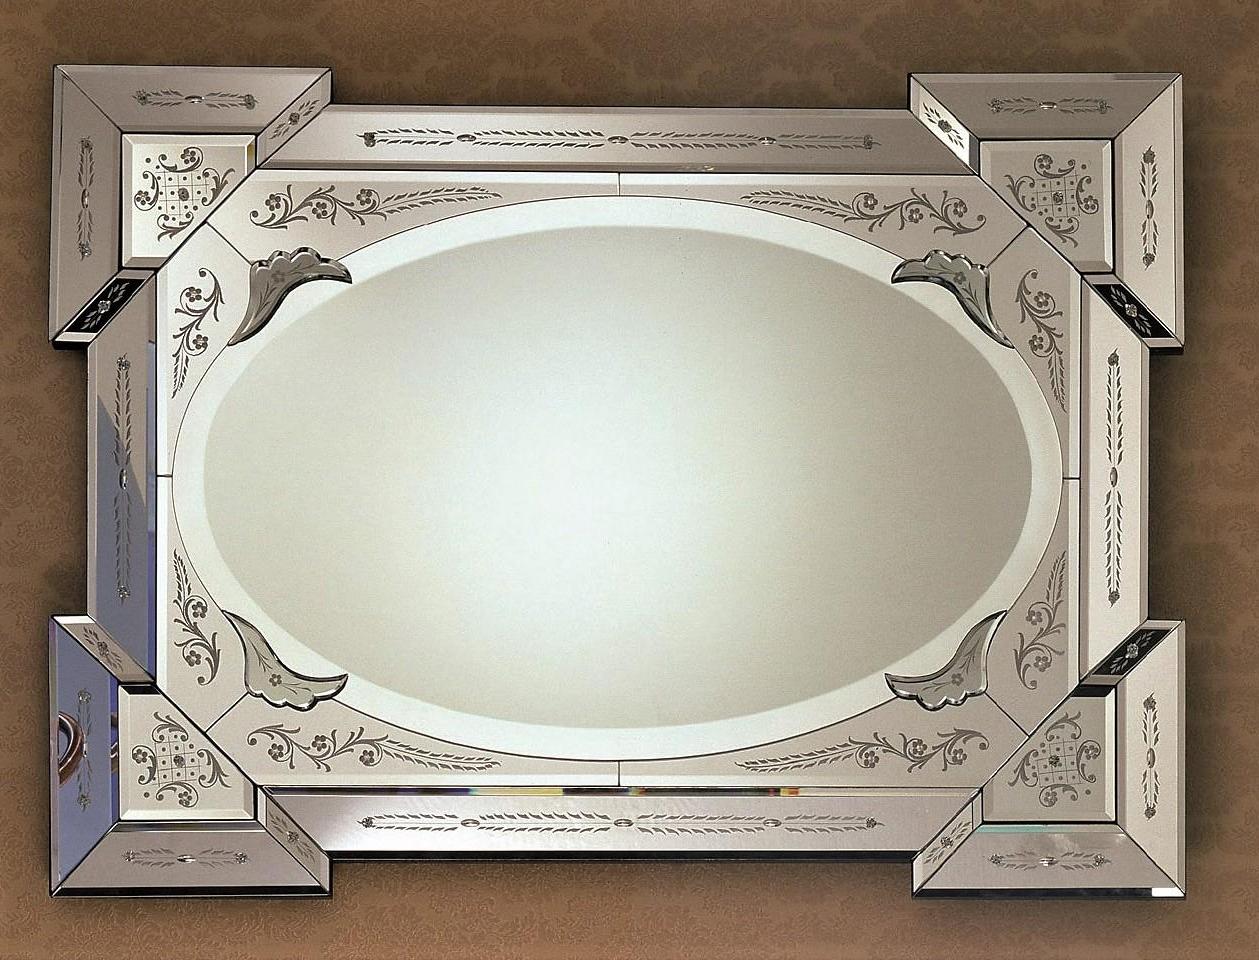 Luxuriöser Spiegel aus Murano-Glas, im französischen Stil des 19. Jahrhunderts, hergestellt von Fratelli Tosi auf der Insel Murano.
Vollständig von Hand gespiegelt, geschliffen, graviert, geschnitzt und poliert, wird die Versilberung in reinem